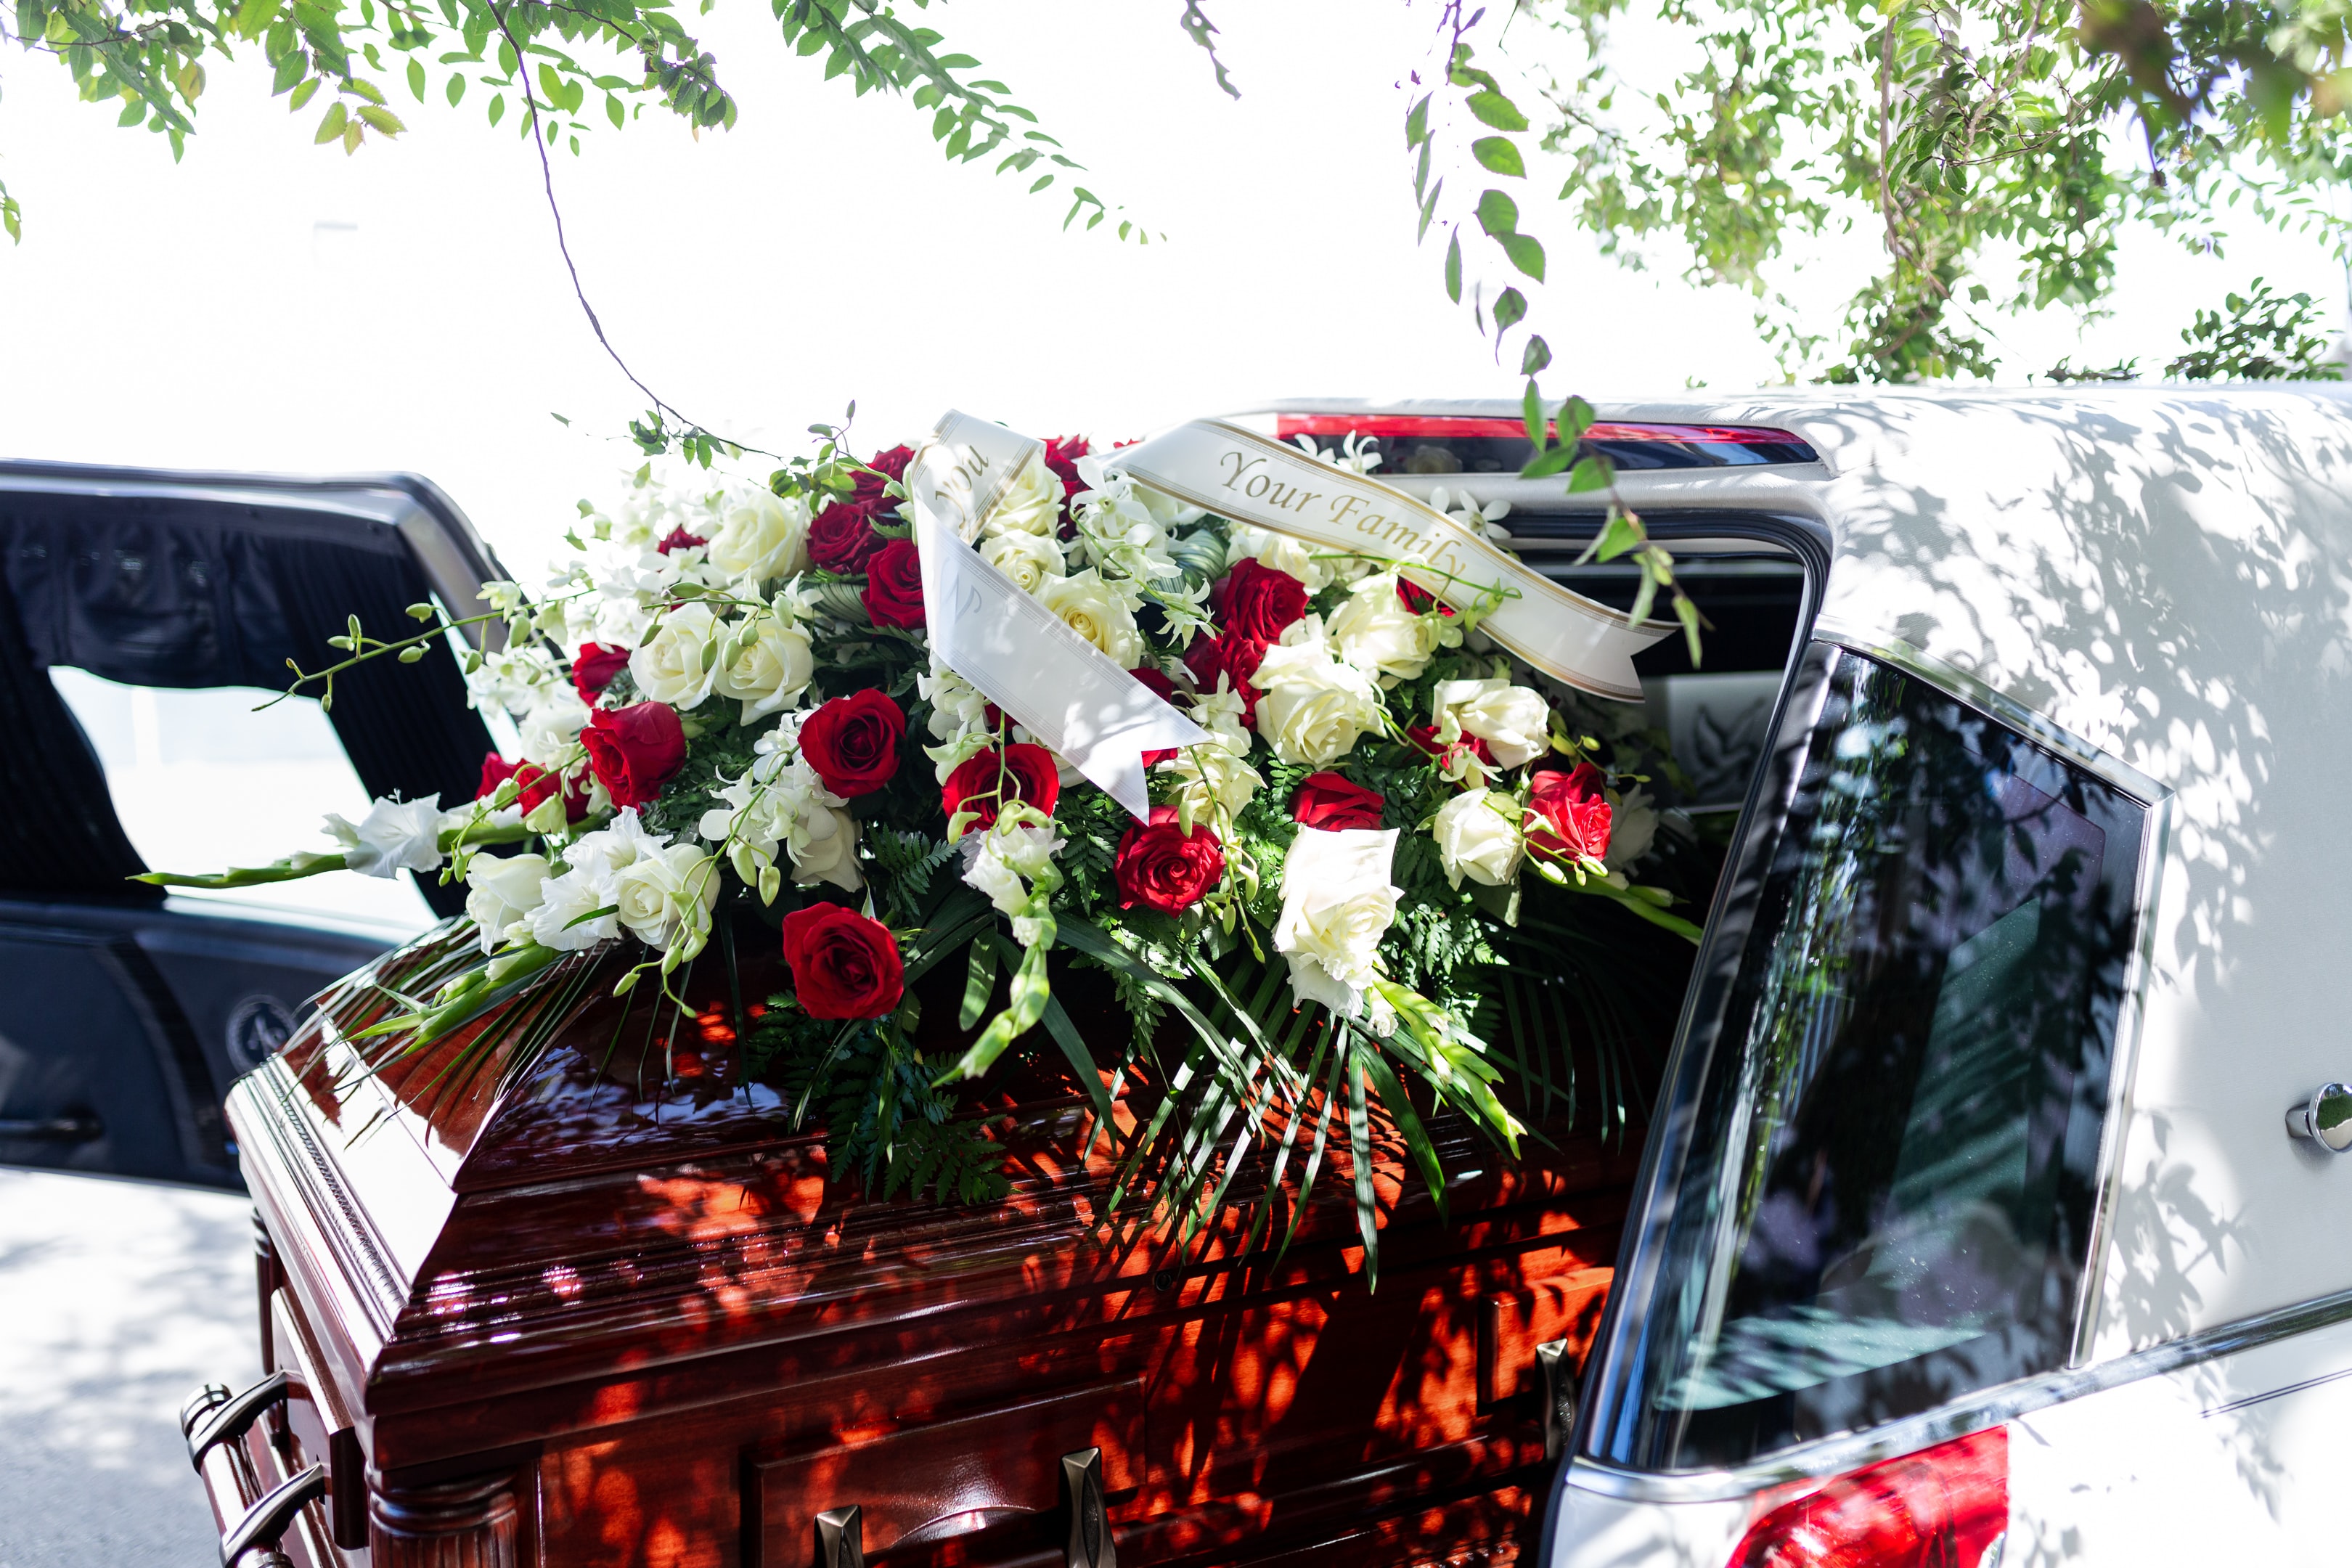 Co symbolizują poszczególne kwiaty pogrzebowe?